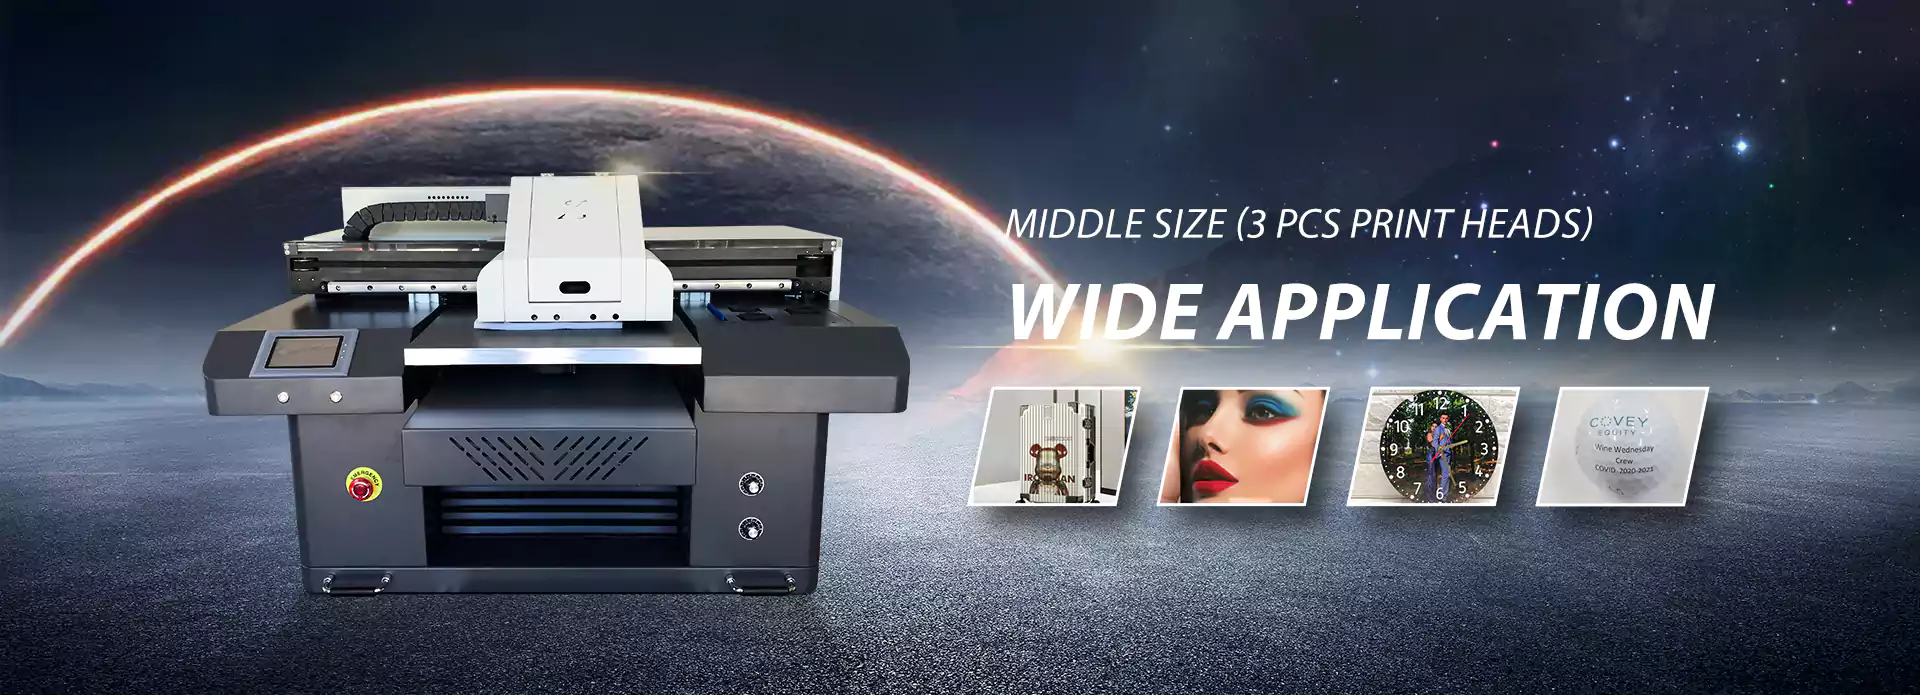 Jucolor A2 uv printer